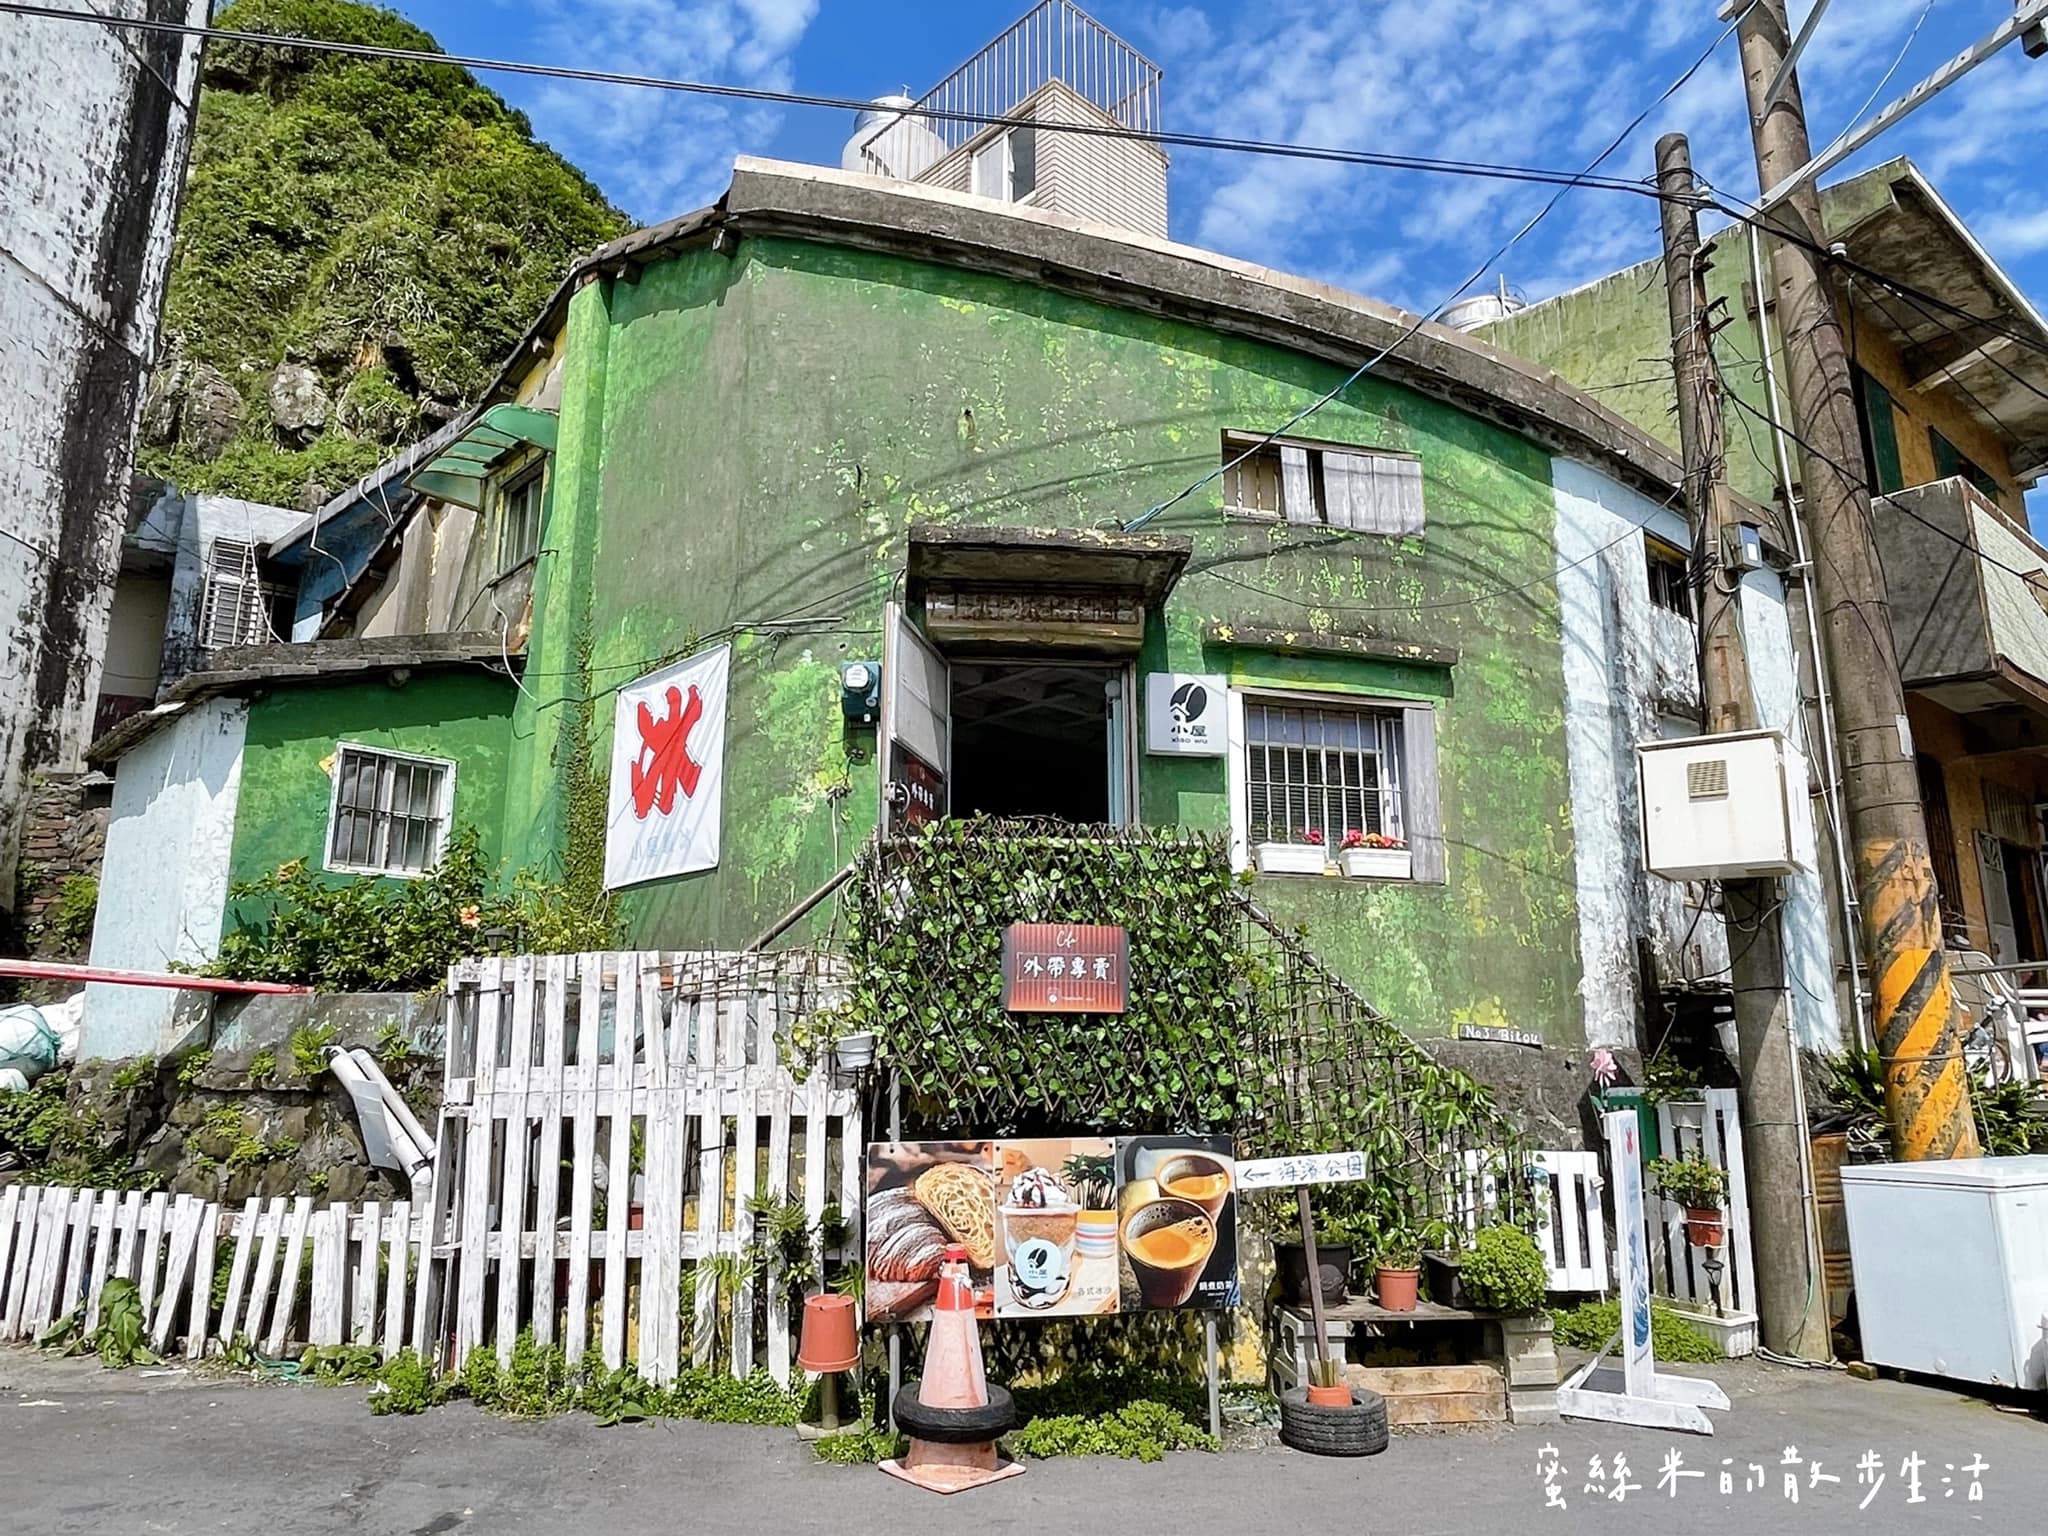 延伸閱讀：鼻頭角海濱公園的童話感百年老宅咖啡屋「小屋 xiao wu」，時髦地外帶一杯冰沙吧！